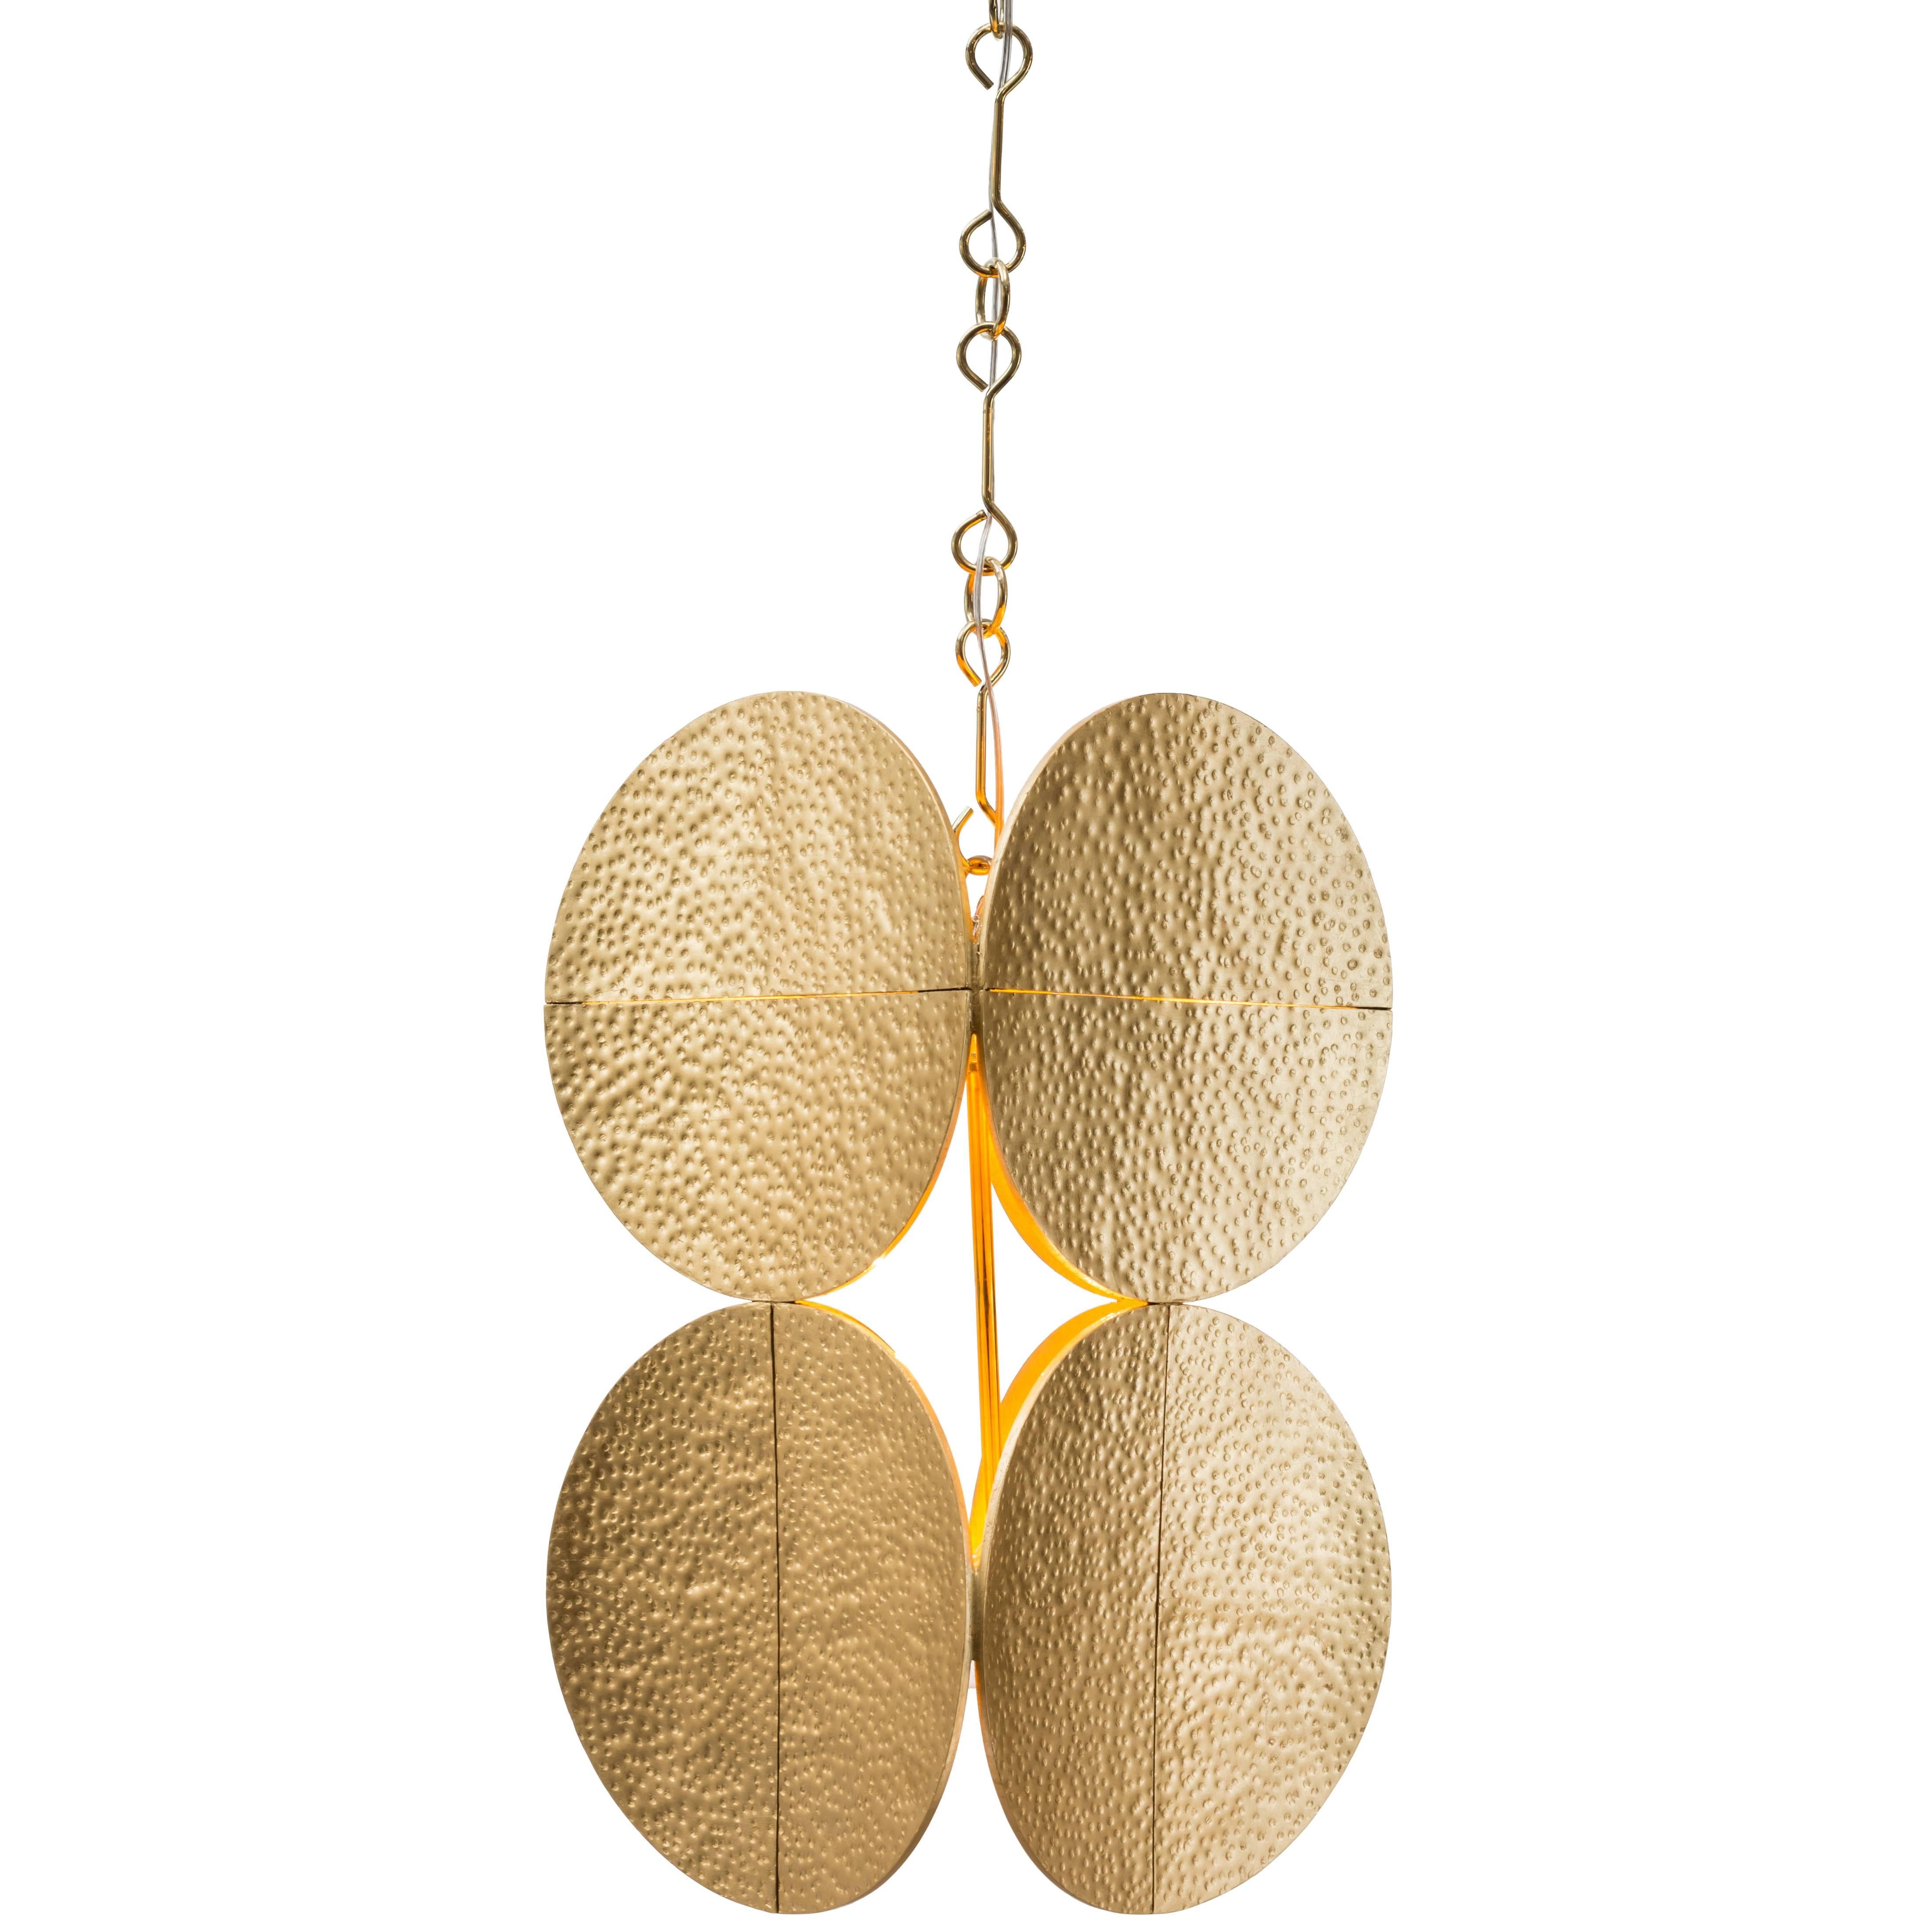 HALO CHANDELIER - Modern Gold Leaf Chandelier with Brass Chain